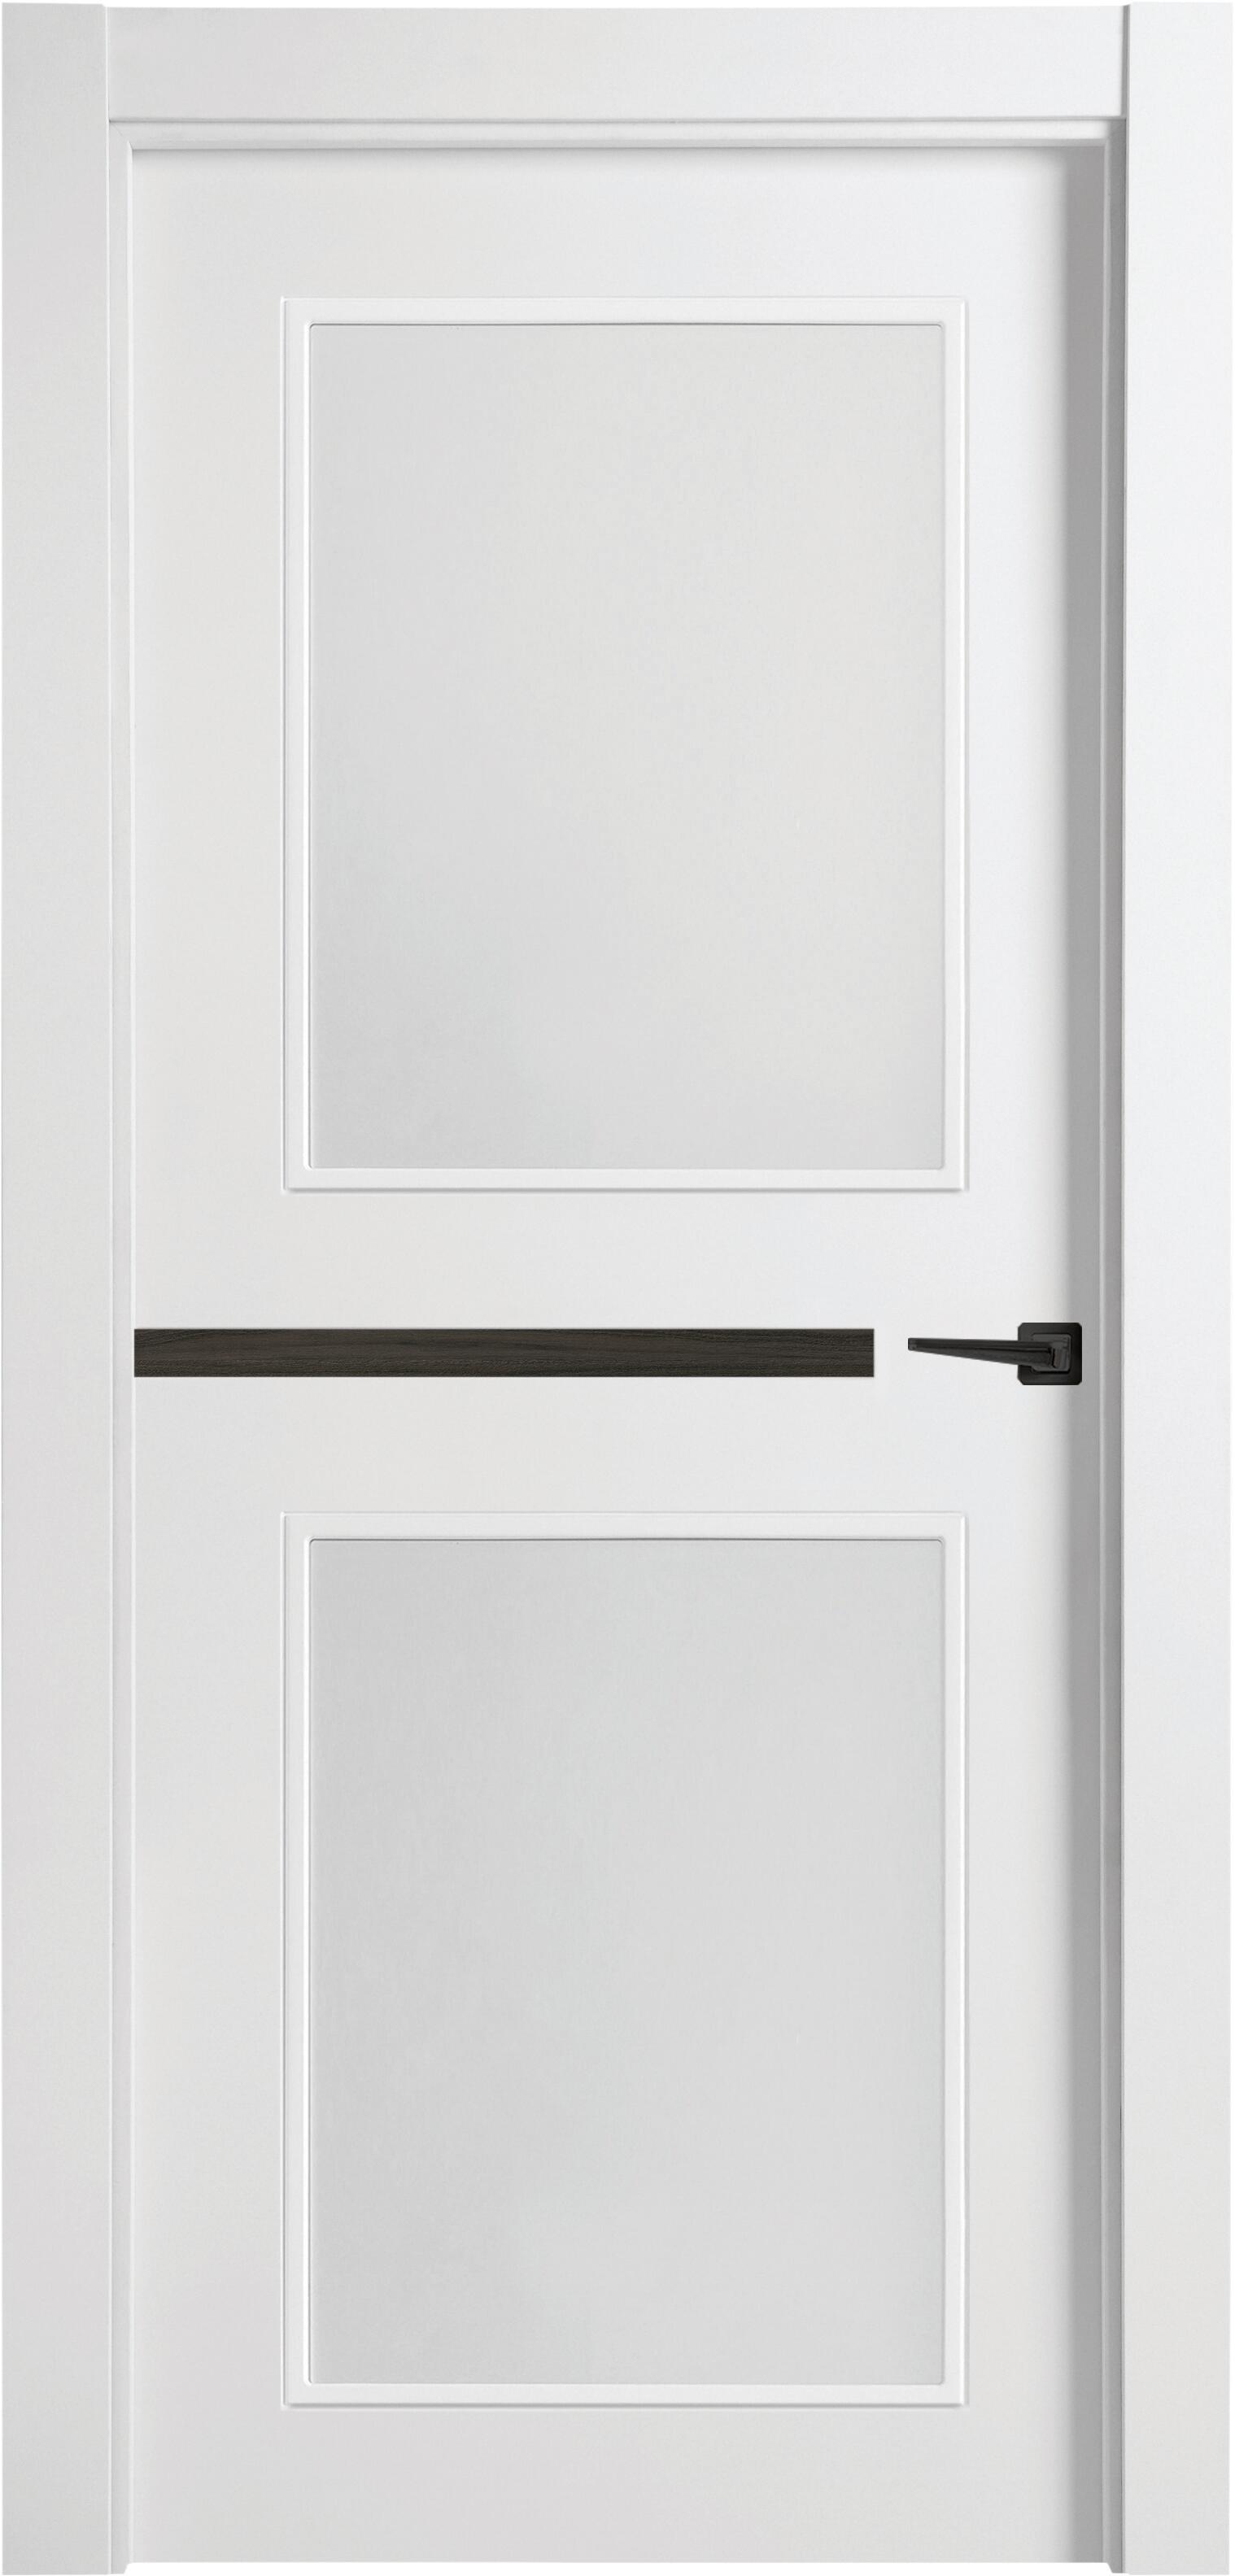 Puerta denver carbón blanco apertura izquierda con cristal 11x92,5 cm